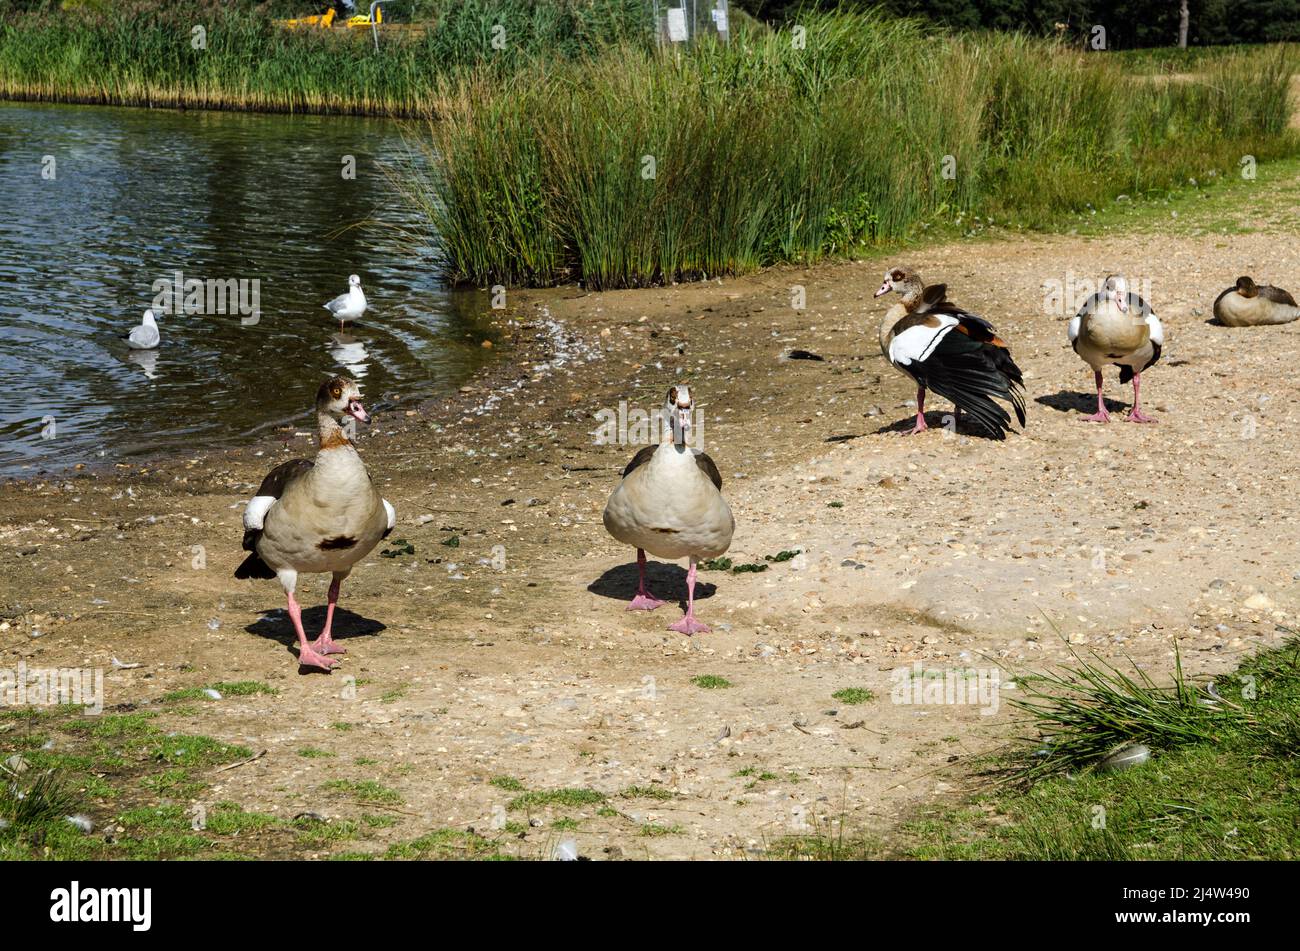 Un grupo de gansos egipcios de pie en el borde de un estanque a finales de verano. Foto de stock